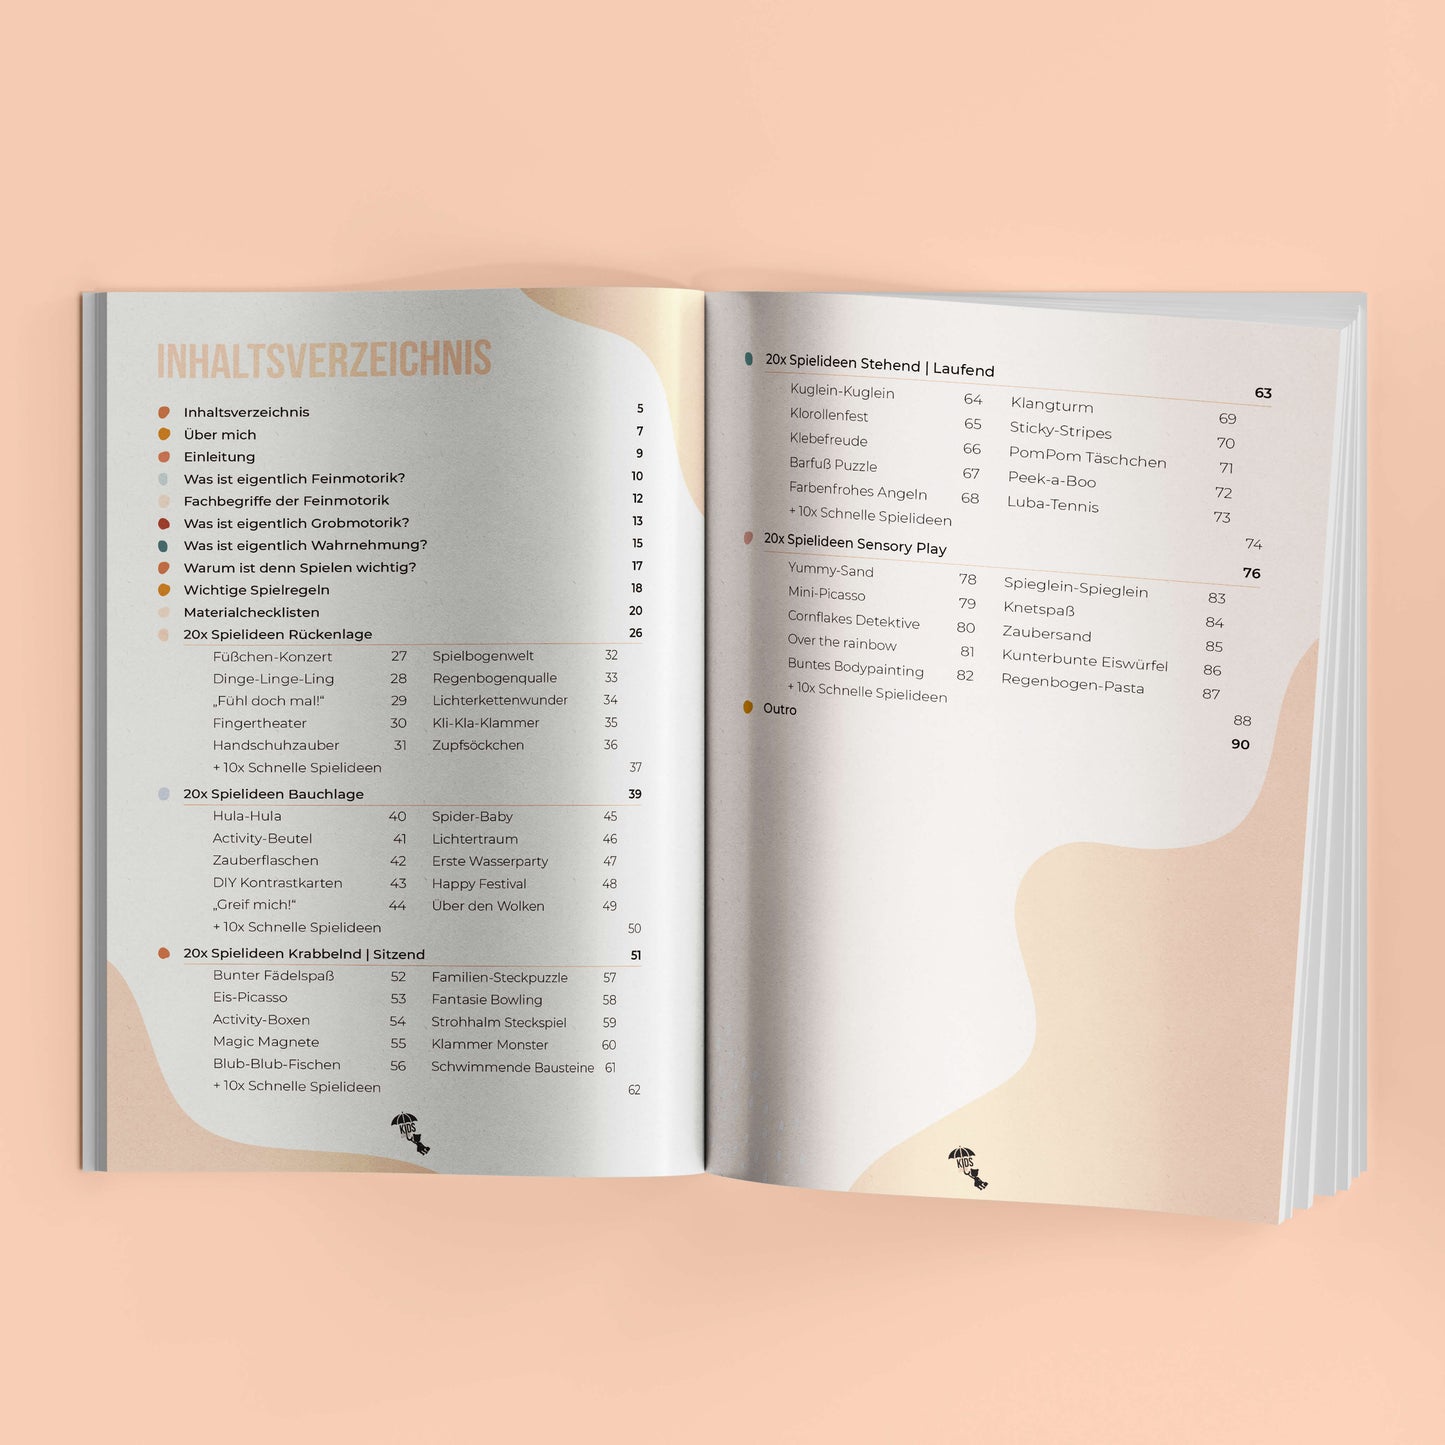 Aufgeschlagenes mykidslounge Buch mit Inhaltsverzeichnis für Spielideen